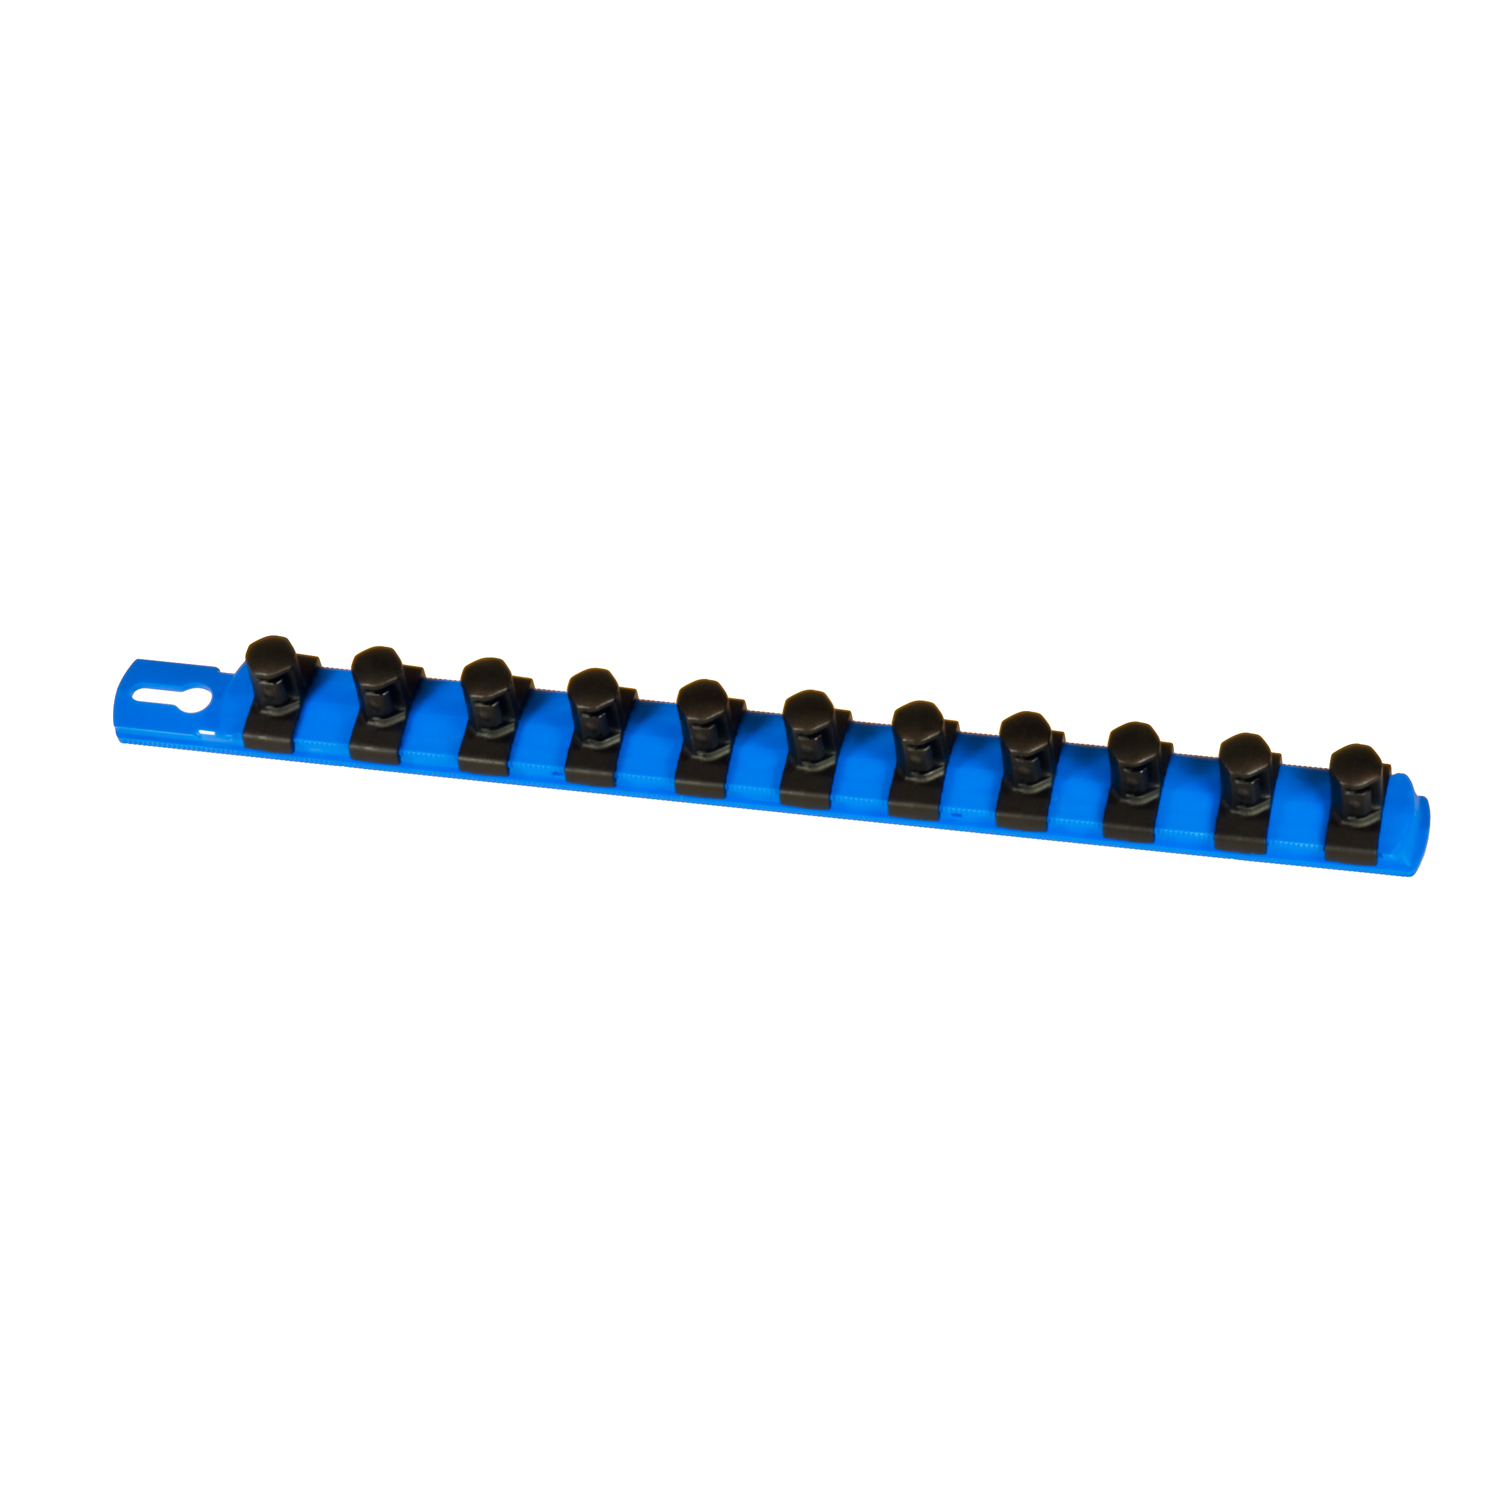 Blue Ernst Manufacturing 13-Inch Socket Organizer with 15 1/4-Inch Twist Lock Clips 